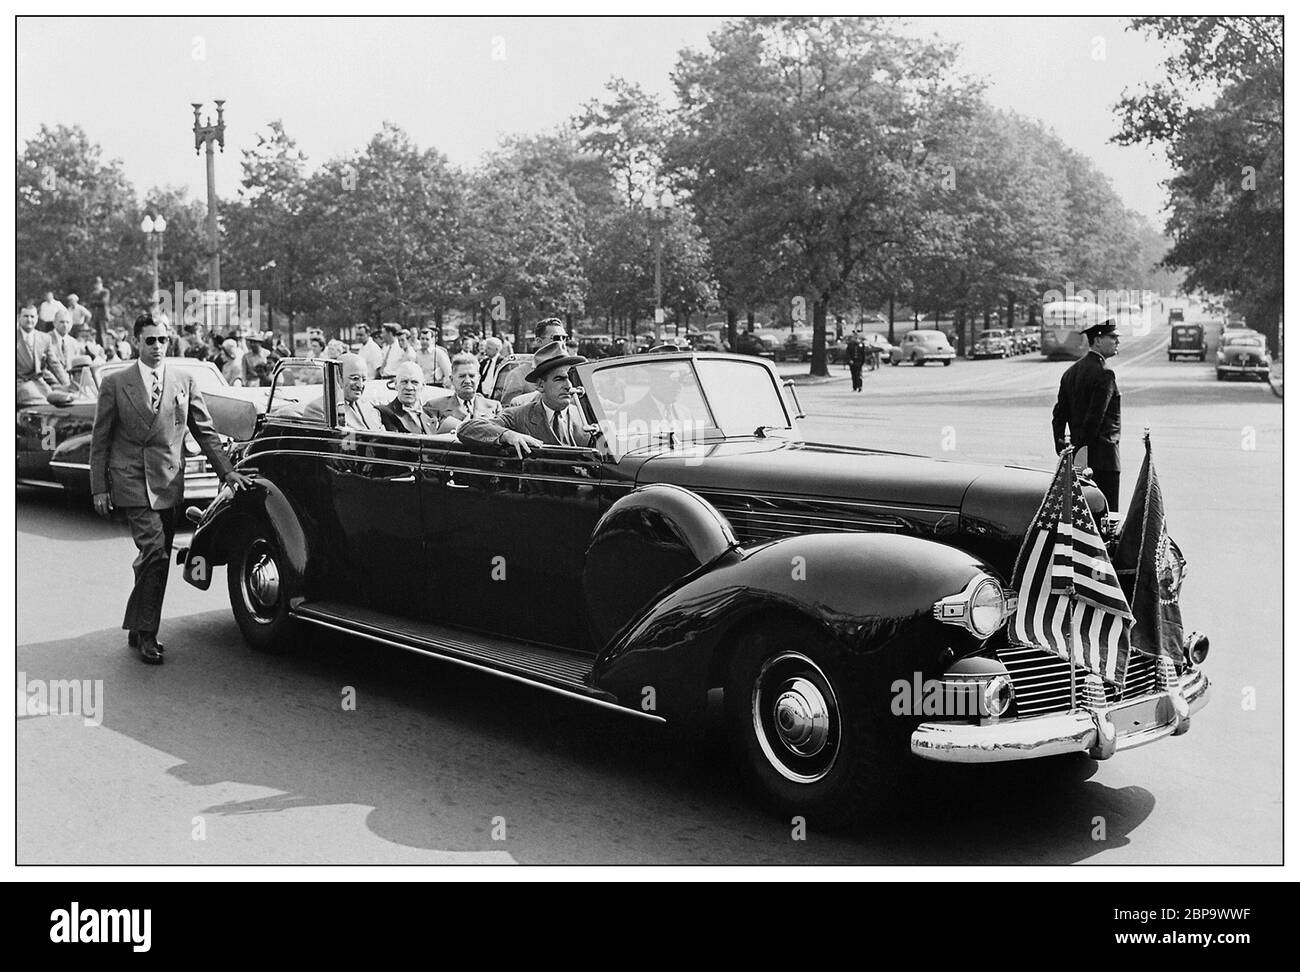 Archiv 1939 Lincoln K-Serie "Sunshine Special" Automobil-Auto mit Präsident Franklin D. Roosevelt. Bis zur FDR-Administration war die Panzerung von Präsidentenautos nicht alltäglich. Doch nach den Angriffen auf Pearl Harbor, Roosevelts K-Serie erhielt kugelsichere Fenster und Panzerung. Abgesehen davon, die einzigen echten Änderungen enthalten Läufer-Boards für den Geheimdienst und ein paar Notlicht und Sirenen. Stockfoto